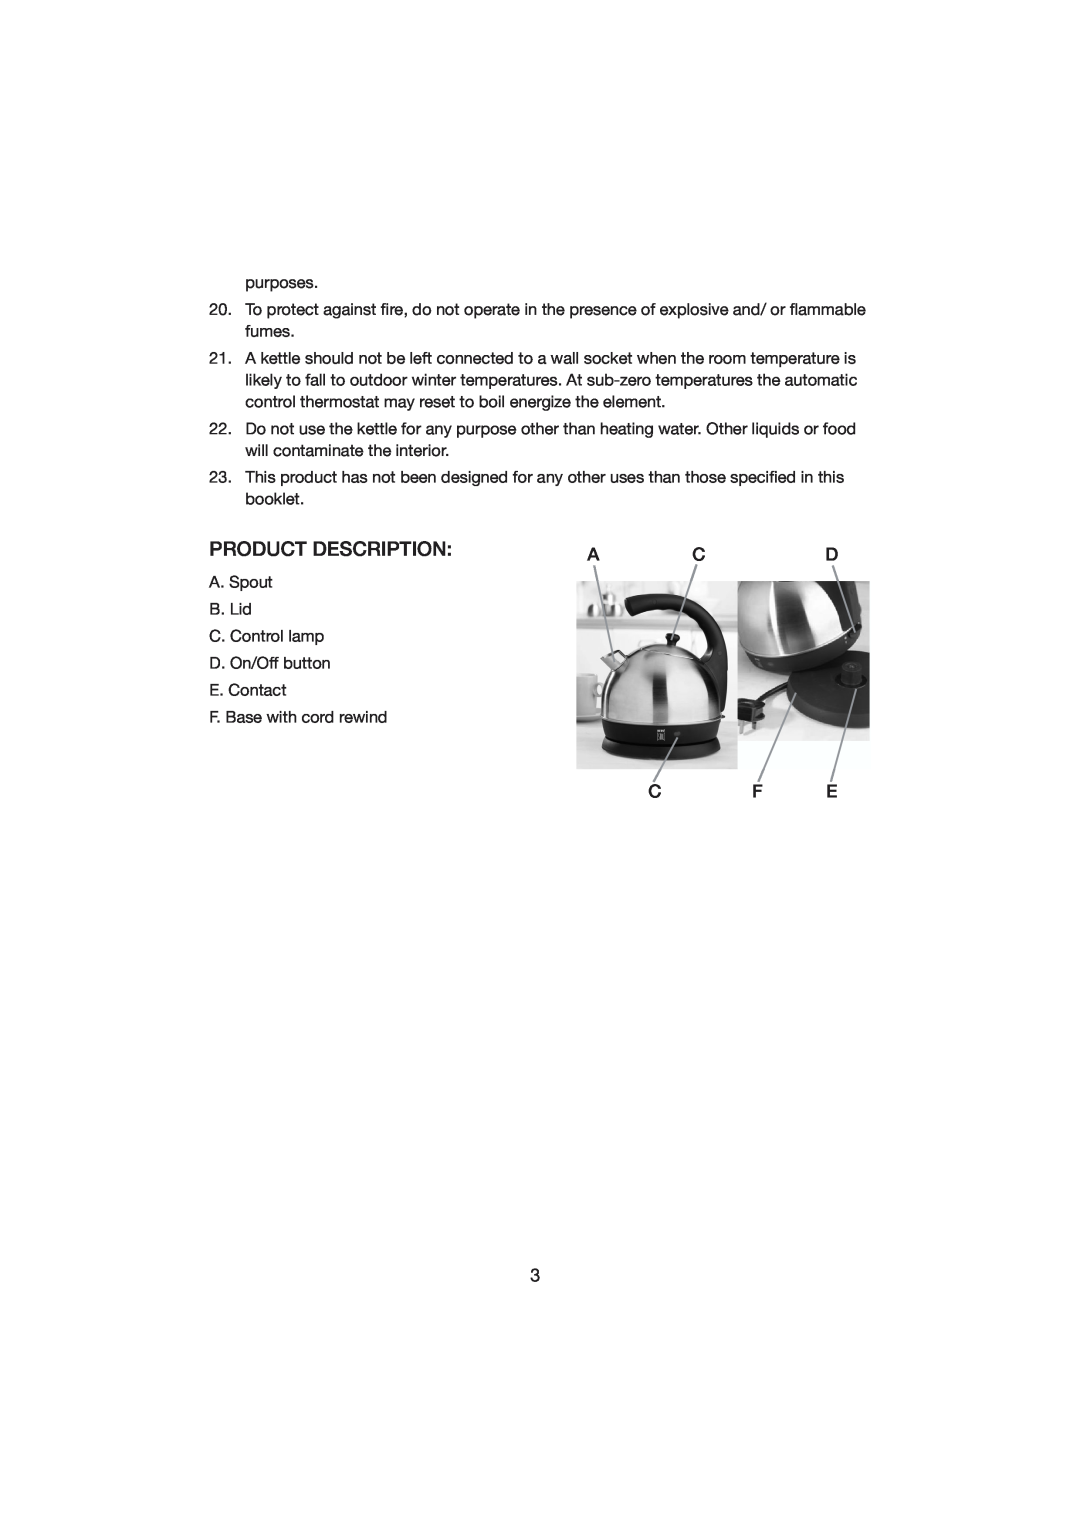 Melissa HW-302 manual Product Description, C F E 